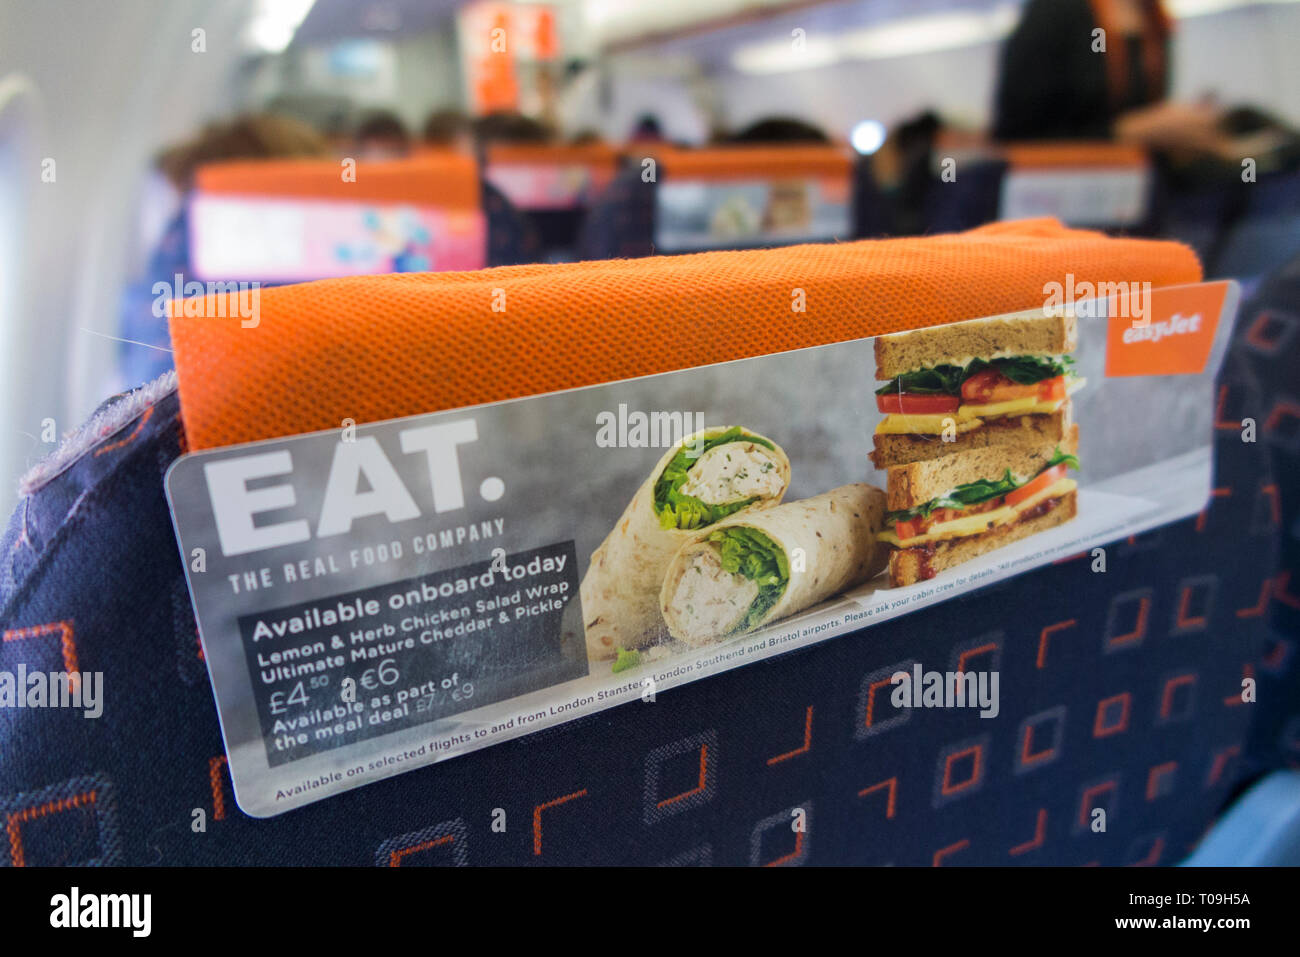 Rückenlehne Kopfstütze/Kopfstütze / im Flug Werbung Werbung Promotion für Airline Süßwaren sandwich wrap/wickelt für den Verkauf an Passagiere, die Sie auf einer Easyjet Flug kaufen können. (104) Stockfoto